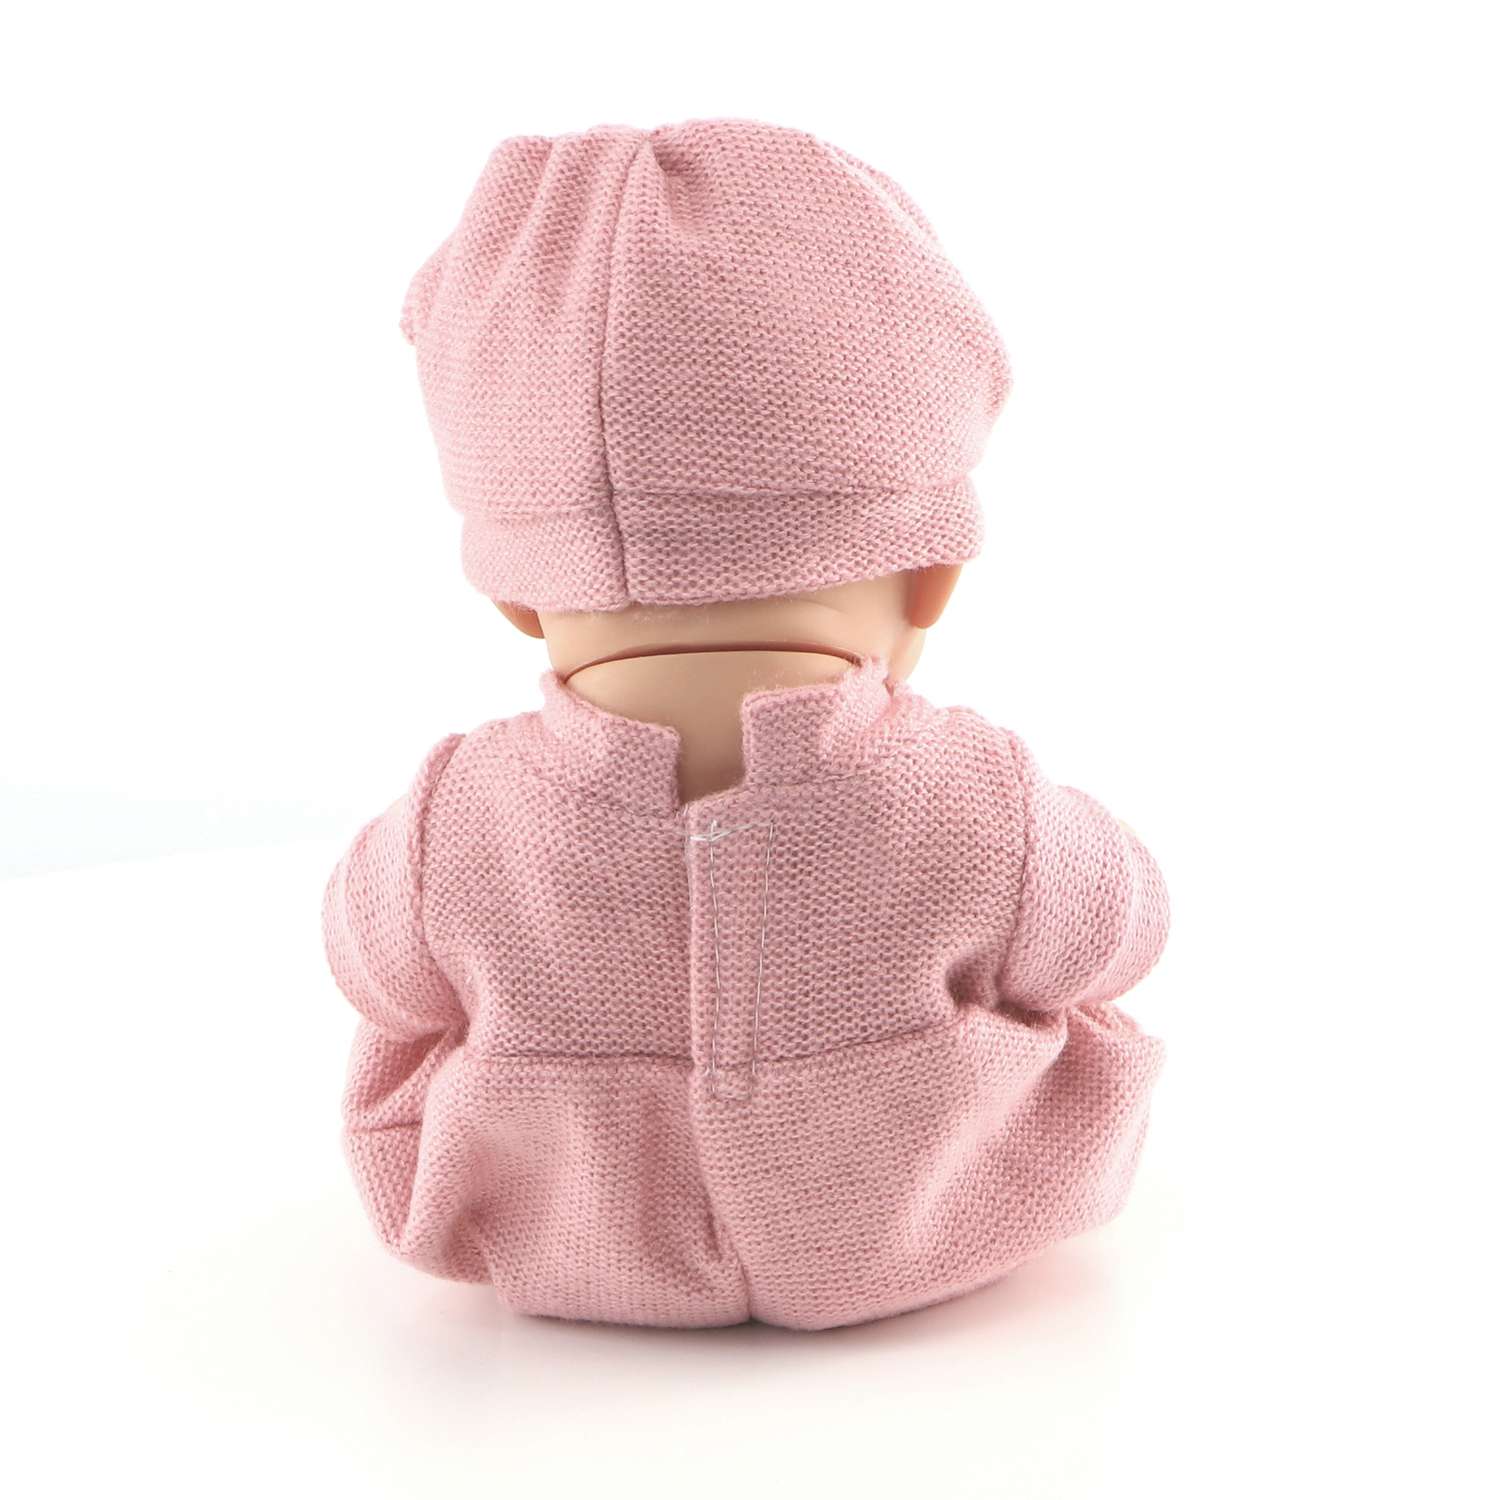 Кукла пупс 1TOY Premium реборн 25 см в розовом комбинезоне пинетках и шапочке Т15467 - фото 6